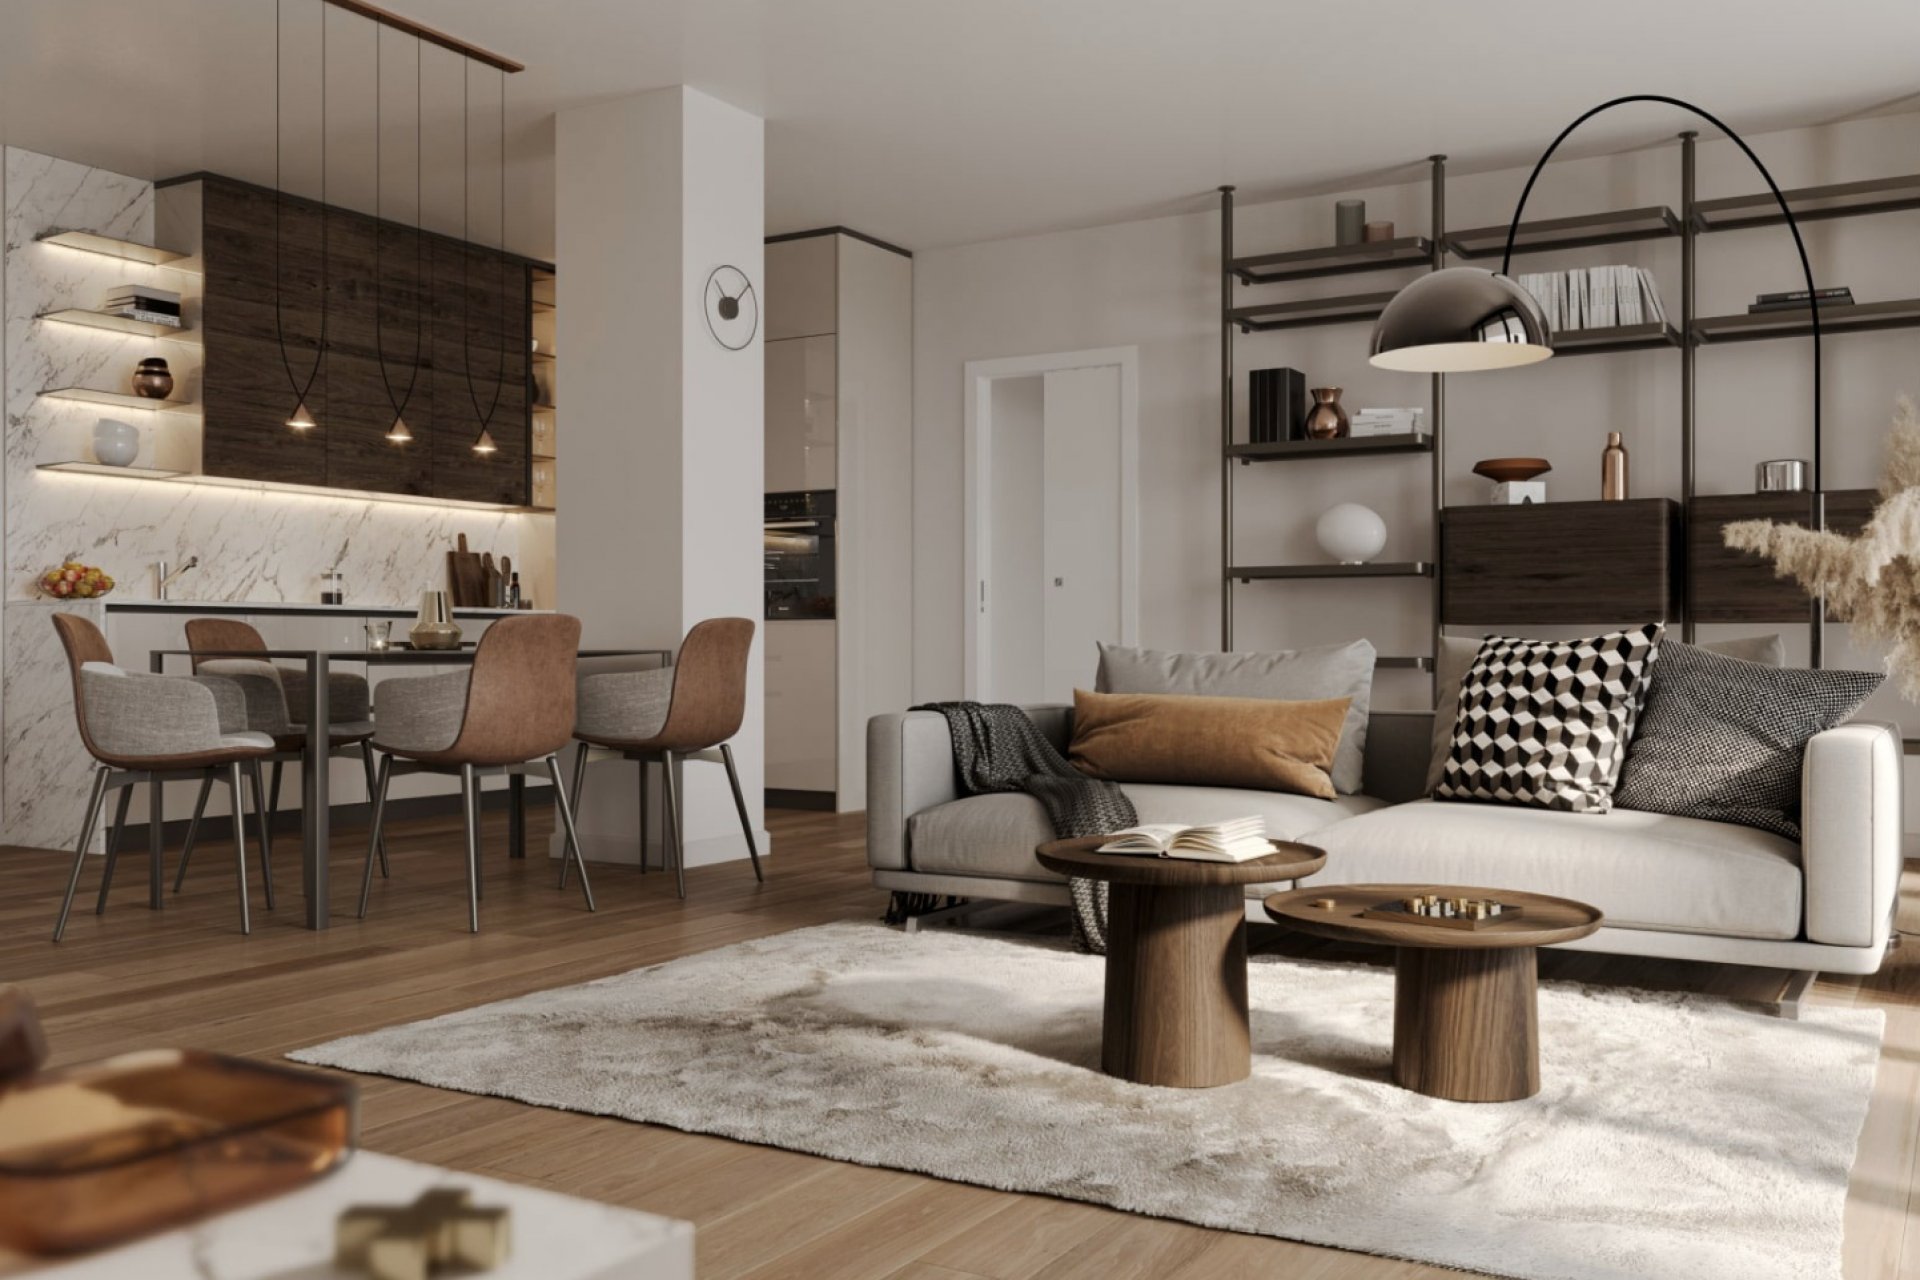 Vendita Apartment Milano - PARCO SEMPIONE / ARENA. NEW APARTMENT FOR SALE Locality Arco della Pace - Arena - Moscova